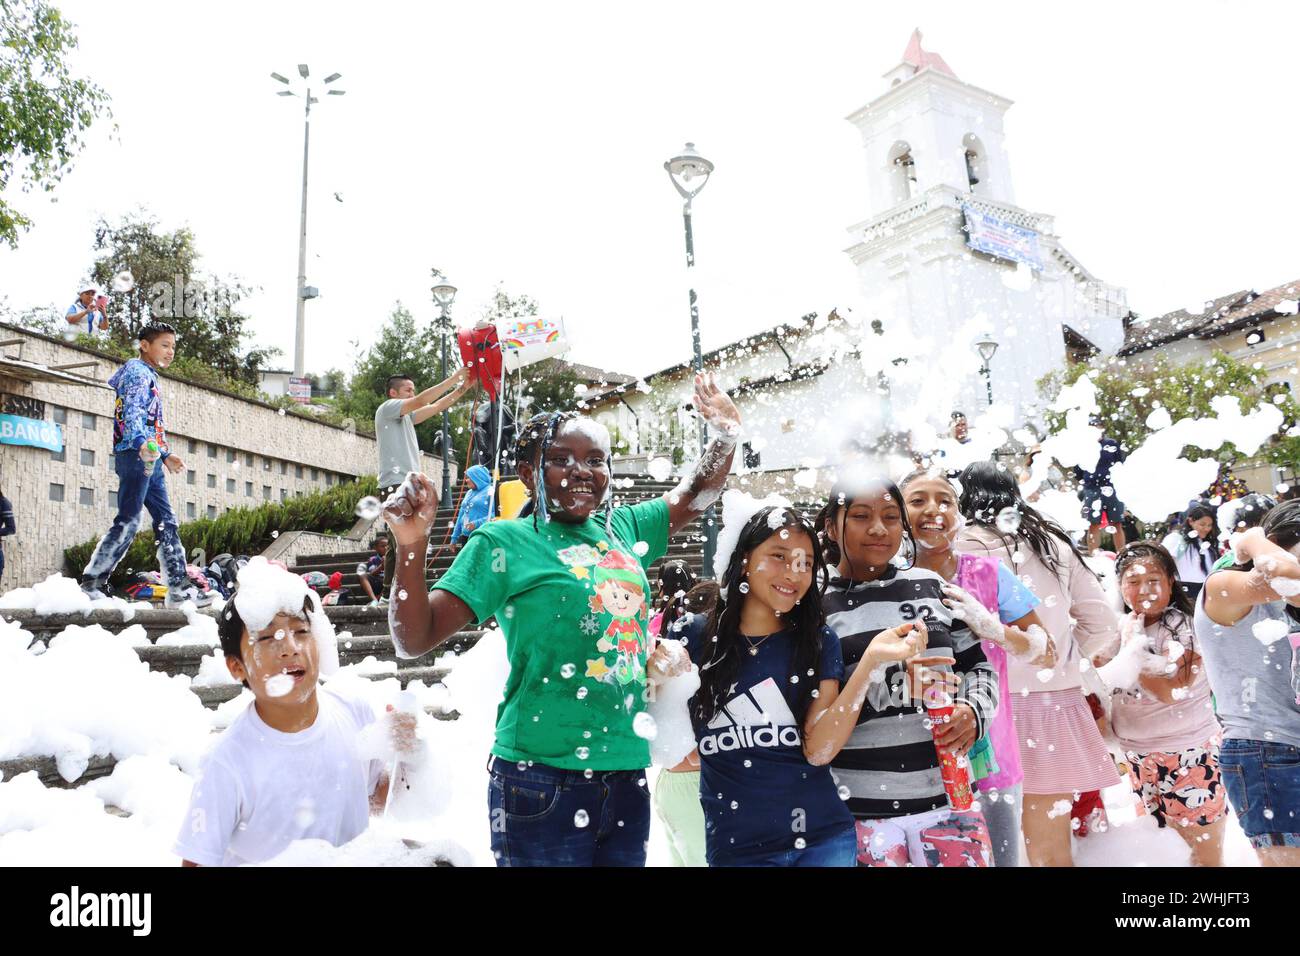 UIO-CARNAVAL-PLAZA-SAN-BLAS Quito, sabado 10 de febrero del 2024 Con Bandas de Paz, bailes tradicionales, canon de espuma, ninos, jovenes y adultos, festejan el feriado de carnaval, en la Plaza de San Blas, Centro Historico. Fotos:Rolando Enriquez/API Quito Pichincha Ecuador ACE-UIO-CARNAVAL-PLAZA-SAN-BLAS-4aeb77a643819d76e853142062ce22ad *** UIO CARNAVAL PLAZA SAN BLAS Quito, Saturday, February 10, 2024 With bands of peace, traditional dances, foam canon, children, youth and adults, celebrate the carnival holiday, in the Plaza de San Blas, Centro Historico Photos Rolando Enriquez API Quito Pi Stock Photo